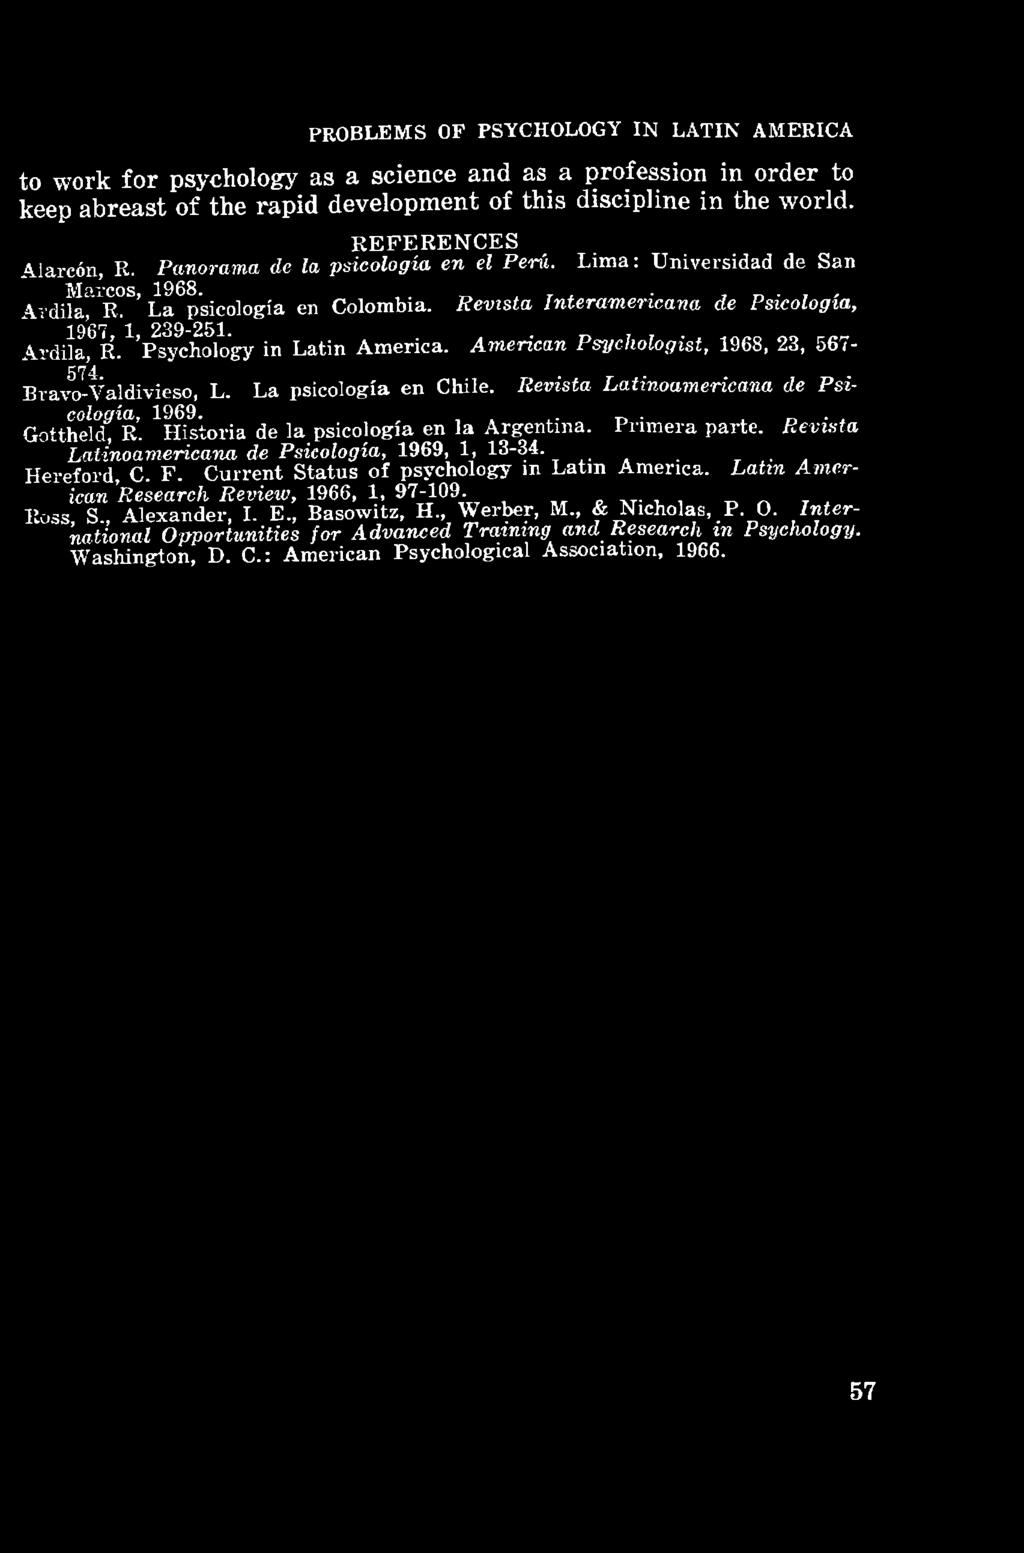 Ardila, R. Psychology in Latin America. American Psychologist, 1968, 23, 567-574... Bravo-Valdivieso, L. La psicologia en Chile. Revista Latinoamericana de Psicología, 1969. Gottheld, R.